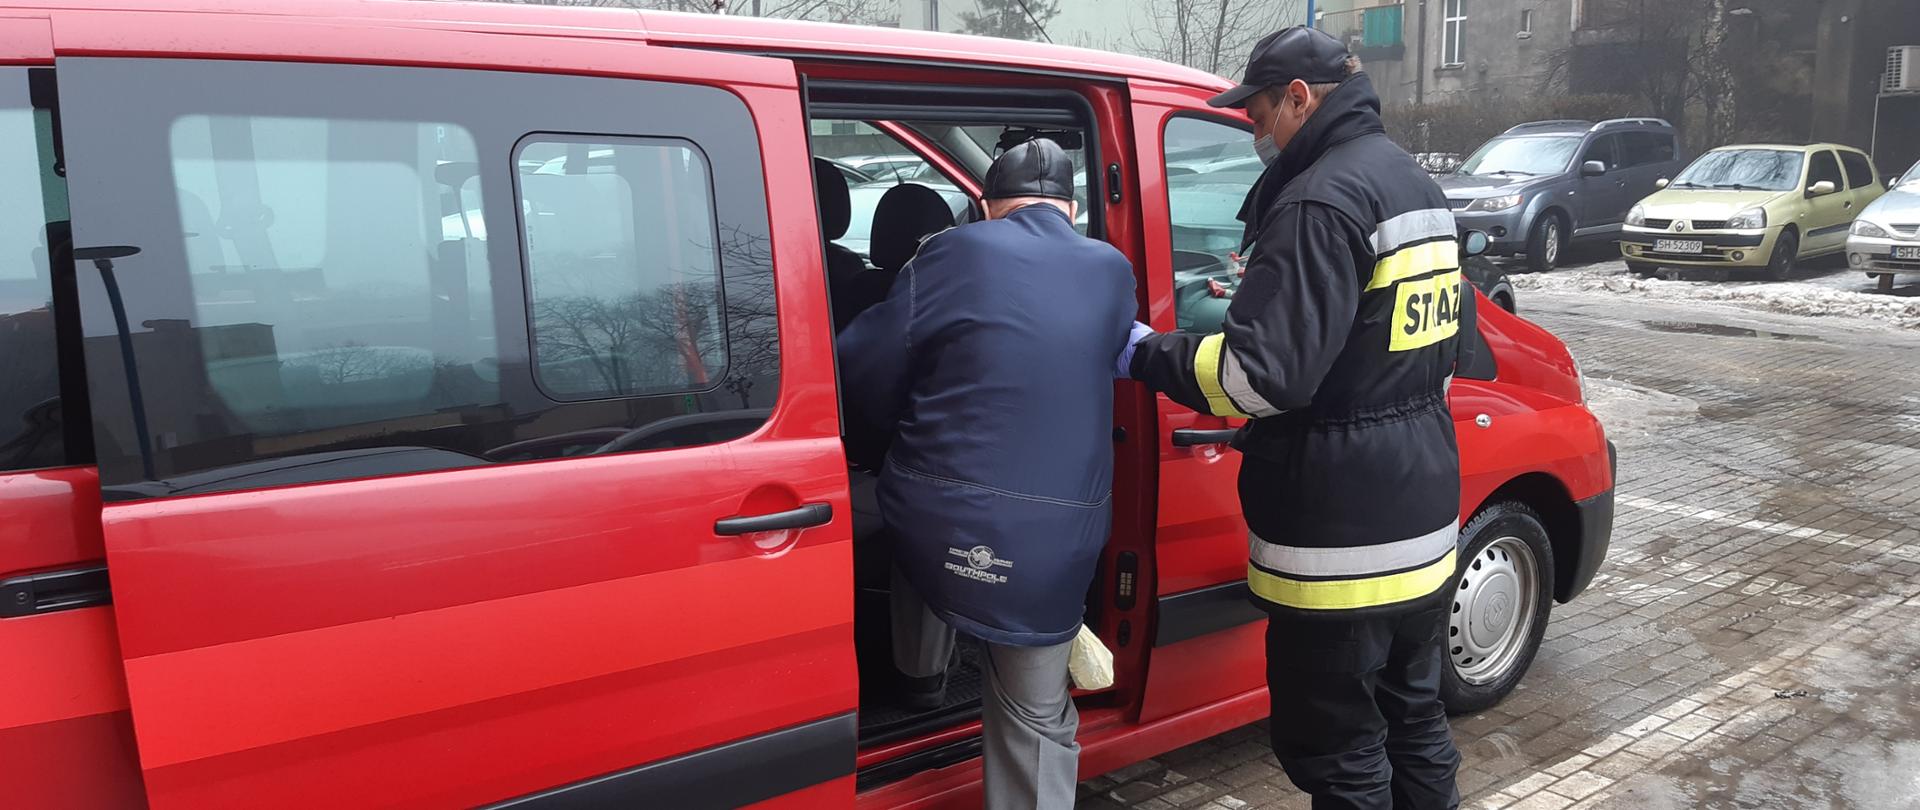 Zdjęcie przedstawia strażaka pomagającego wejść osobie starszej do samochodu pożarniczego typu BUS ze wzgledu na akcję szczepimy się.